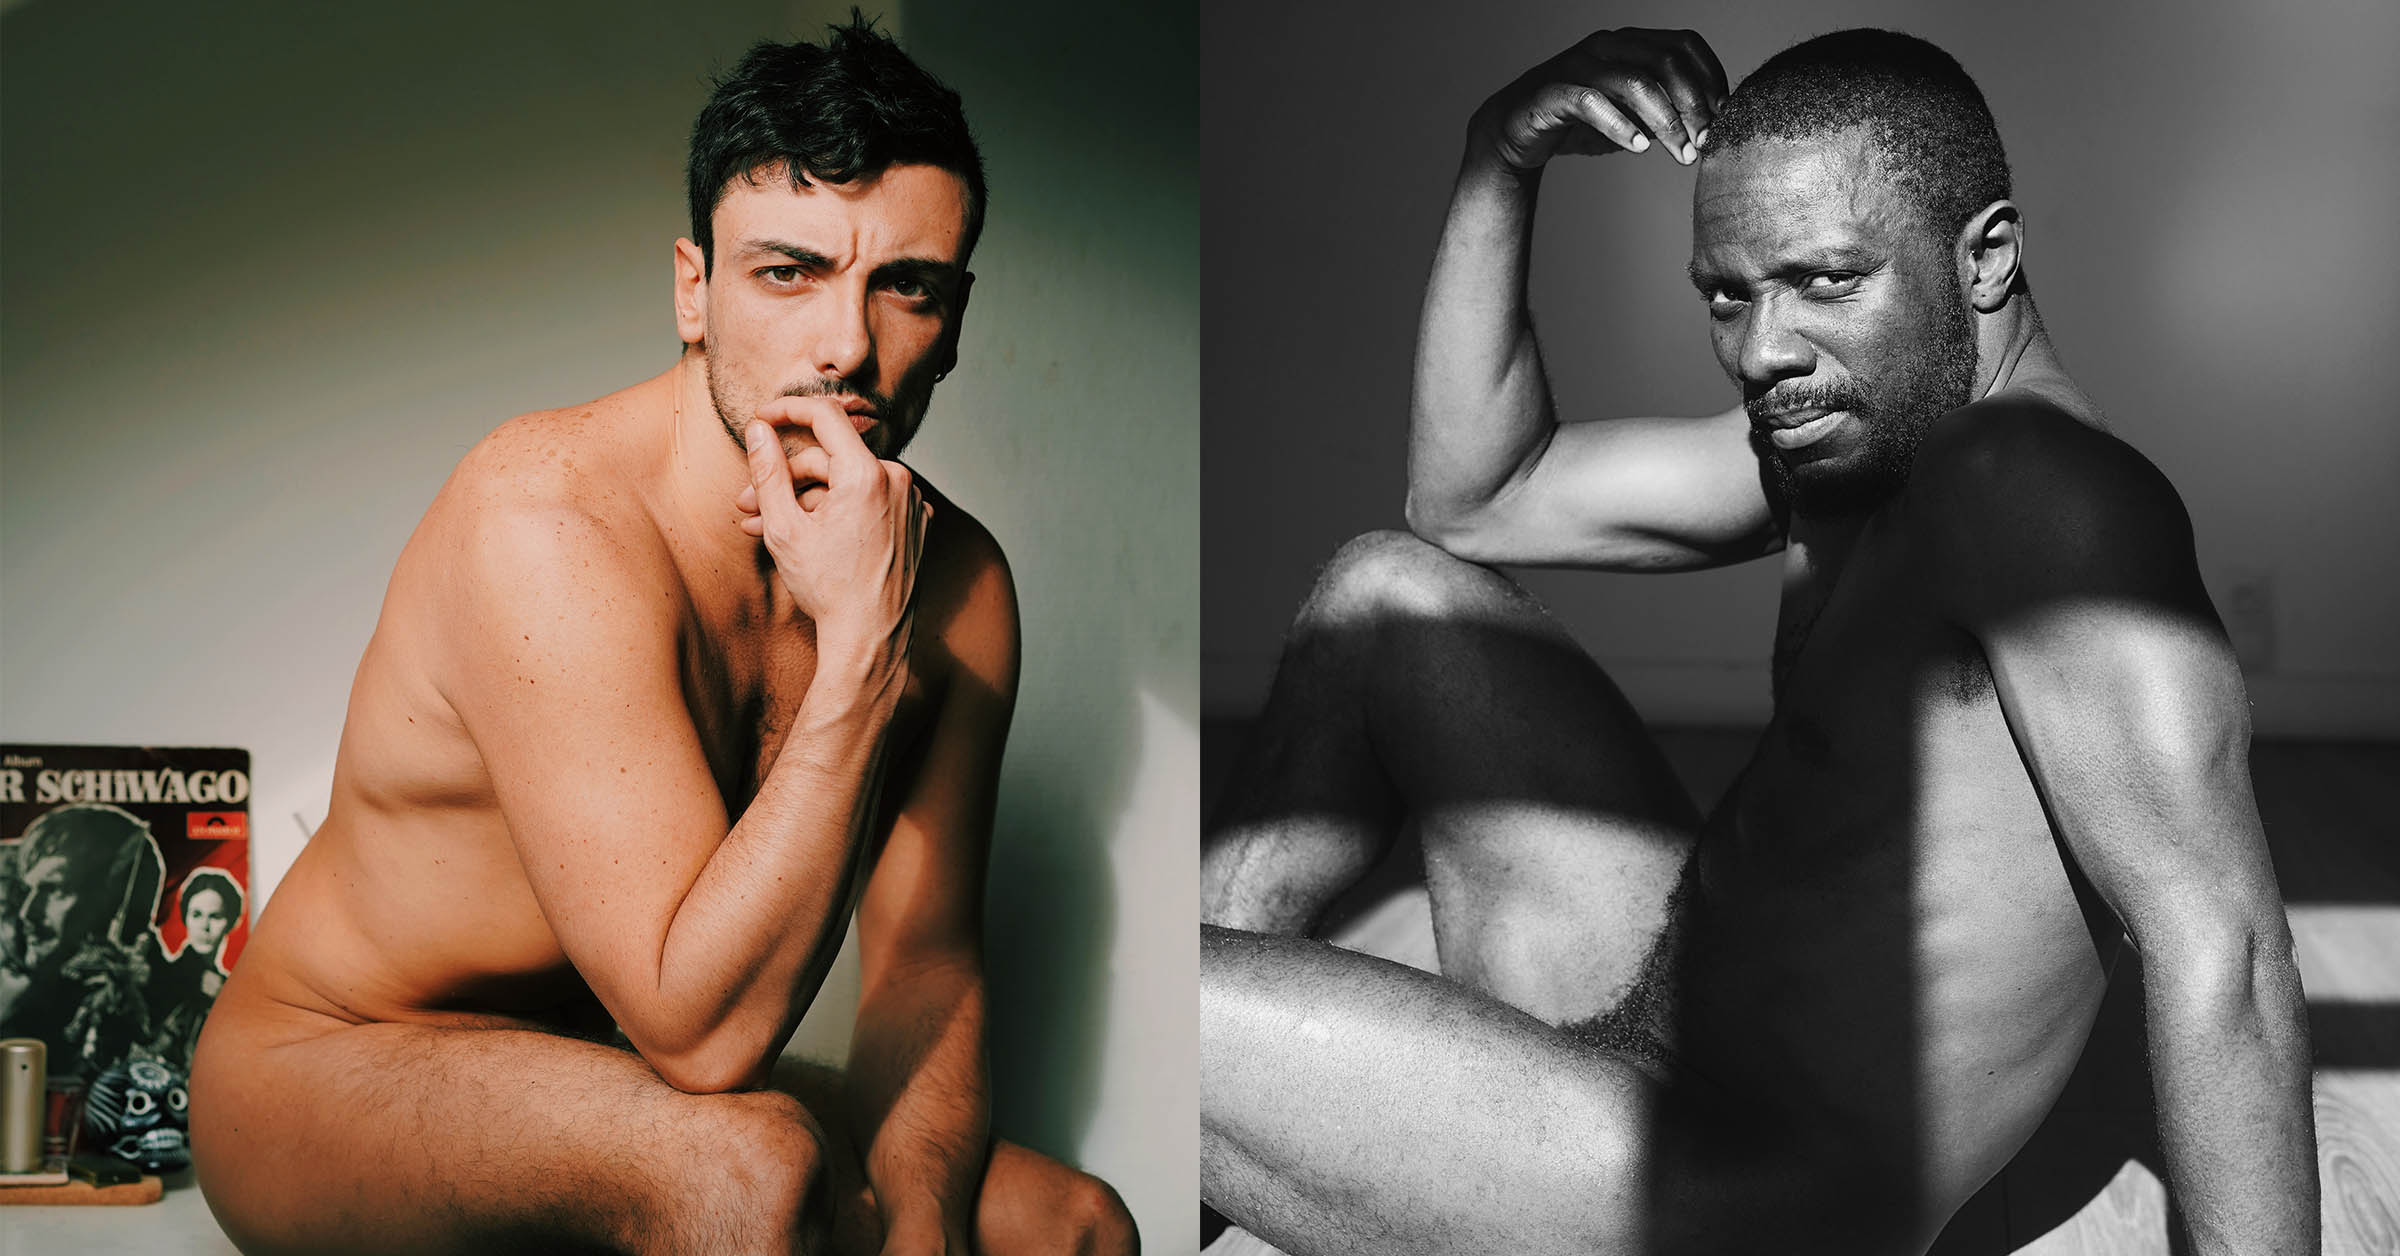 Tale of Men maakt sensuele fotos van LHBT+-mannen en schrijft hun verhalen erbij